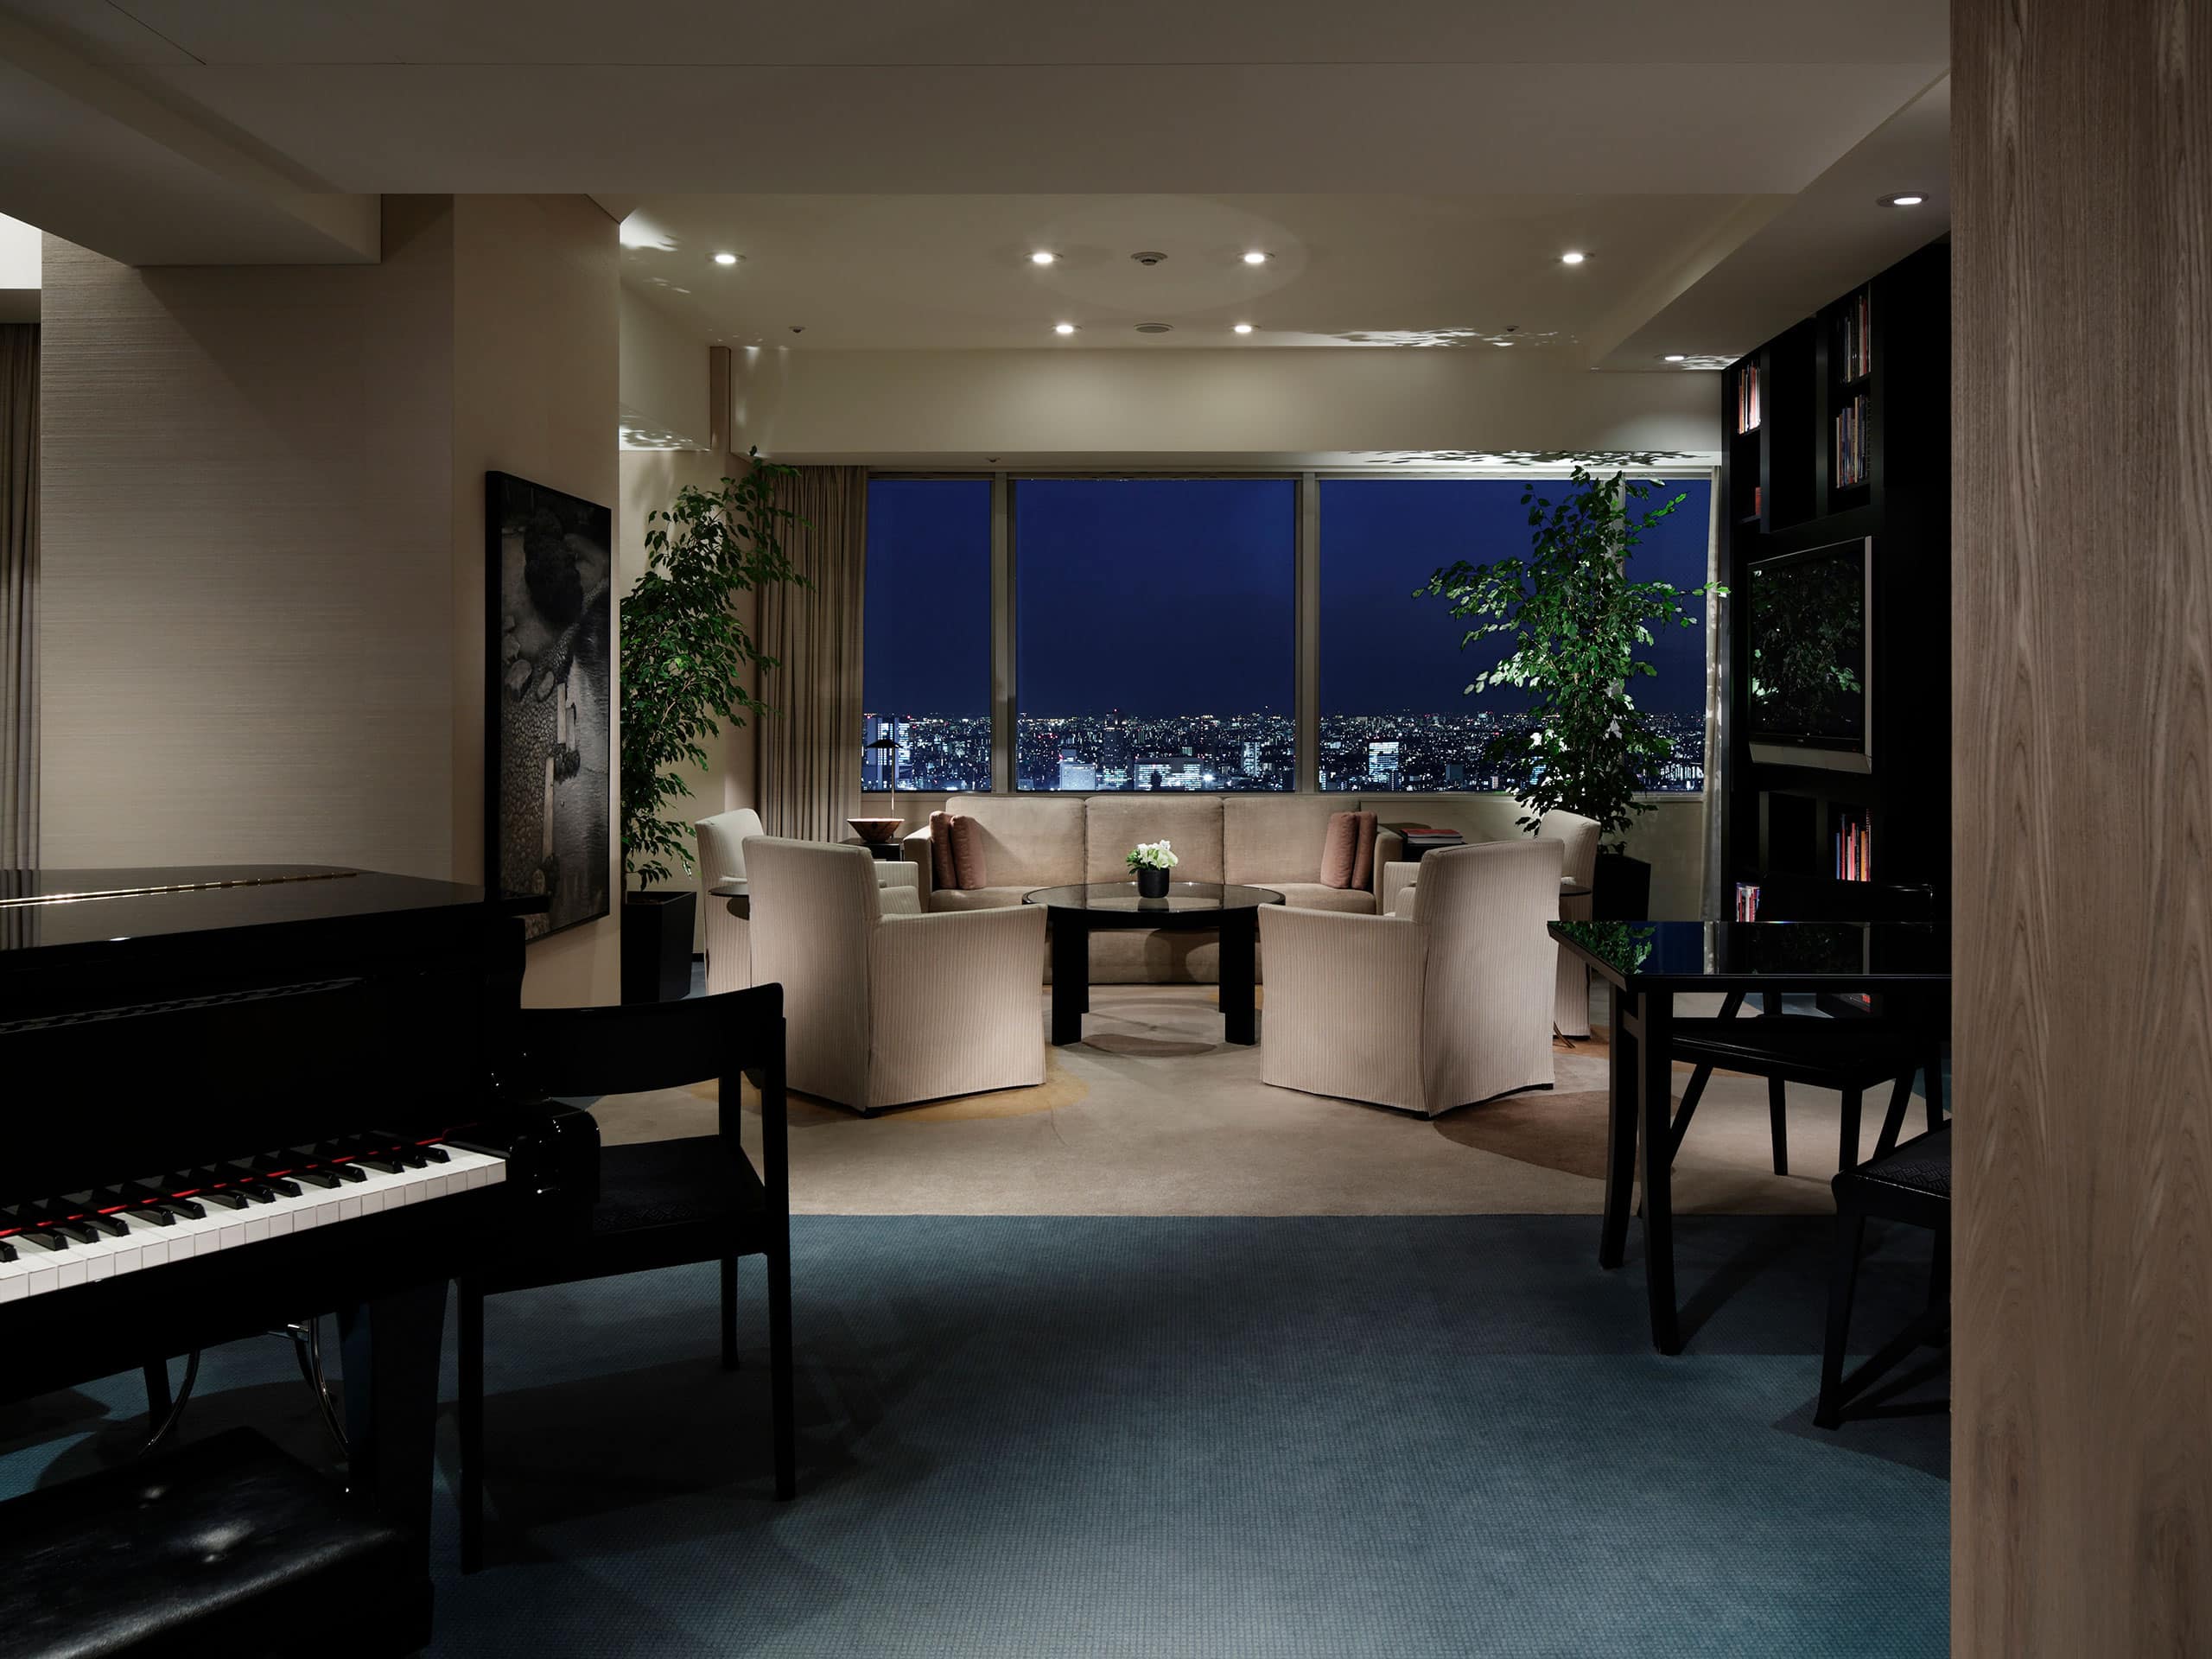 パーク ハイアット 東京 - 東京新宿を代表する5つ星ラグジュアリーホテル